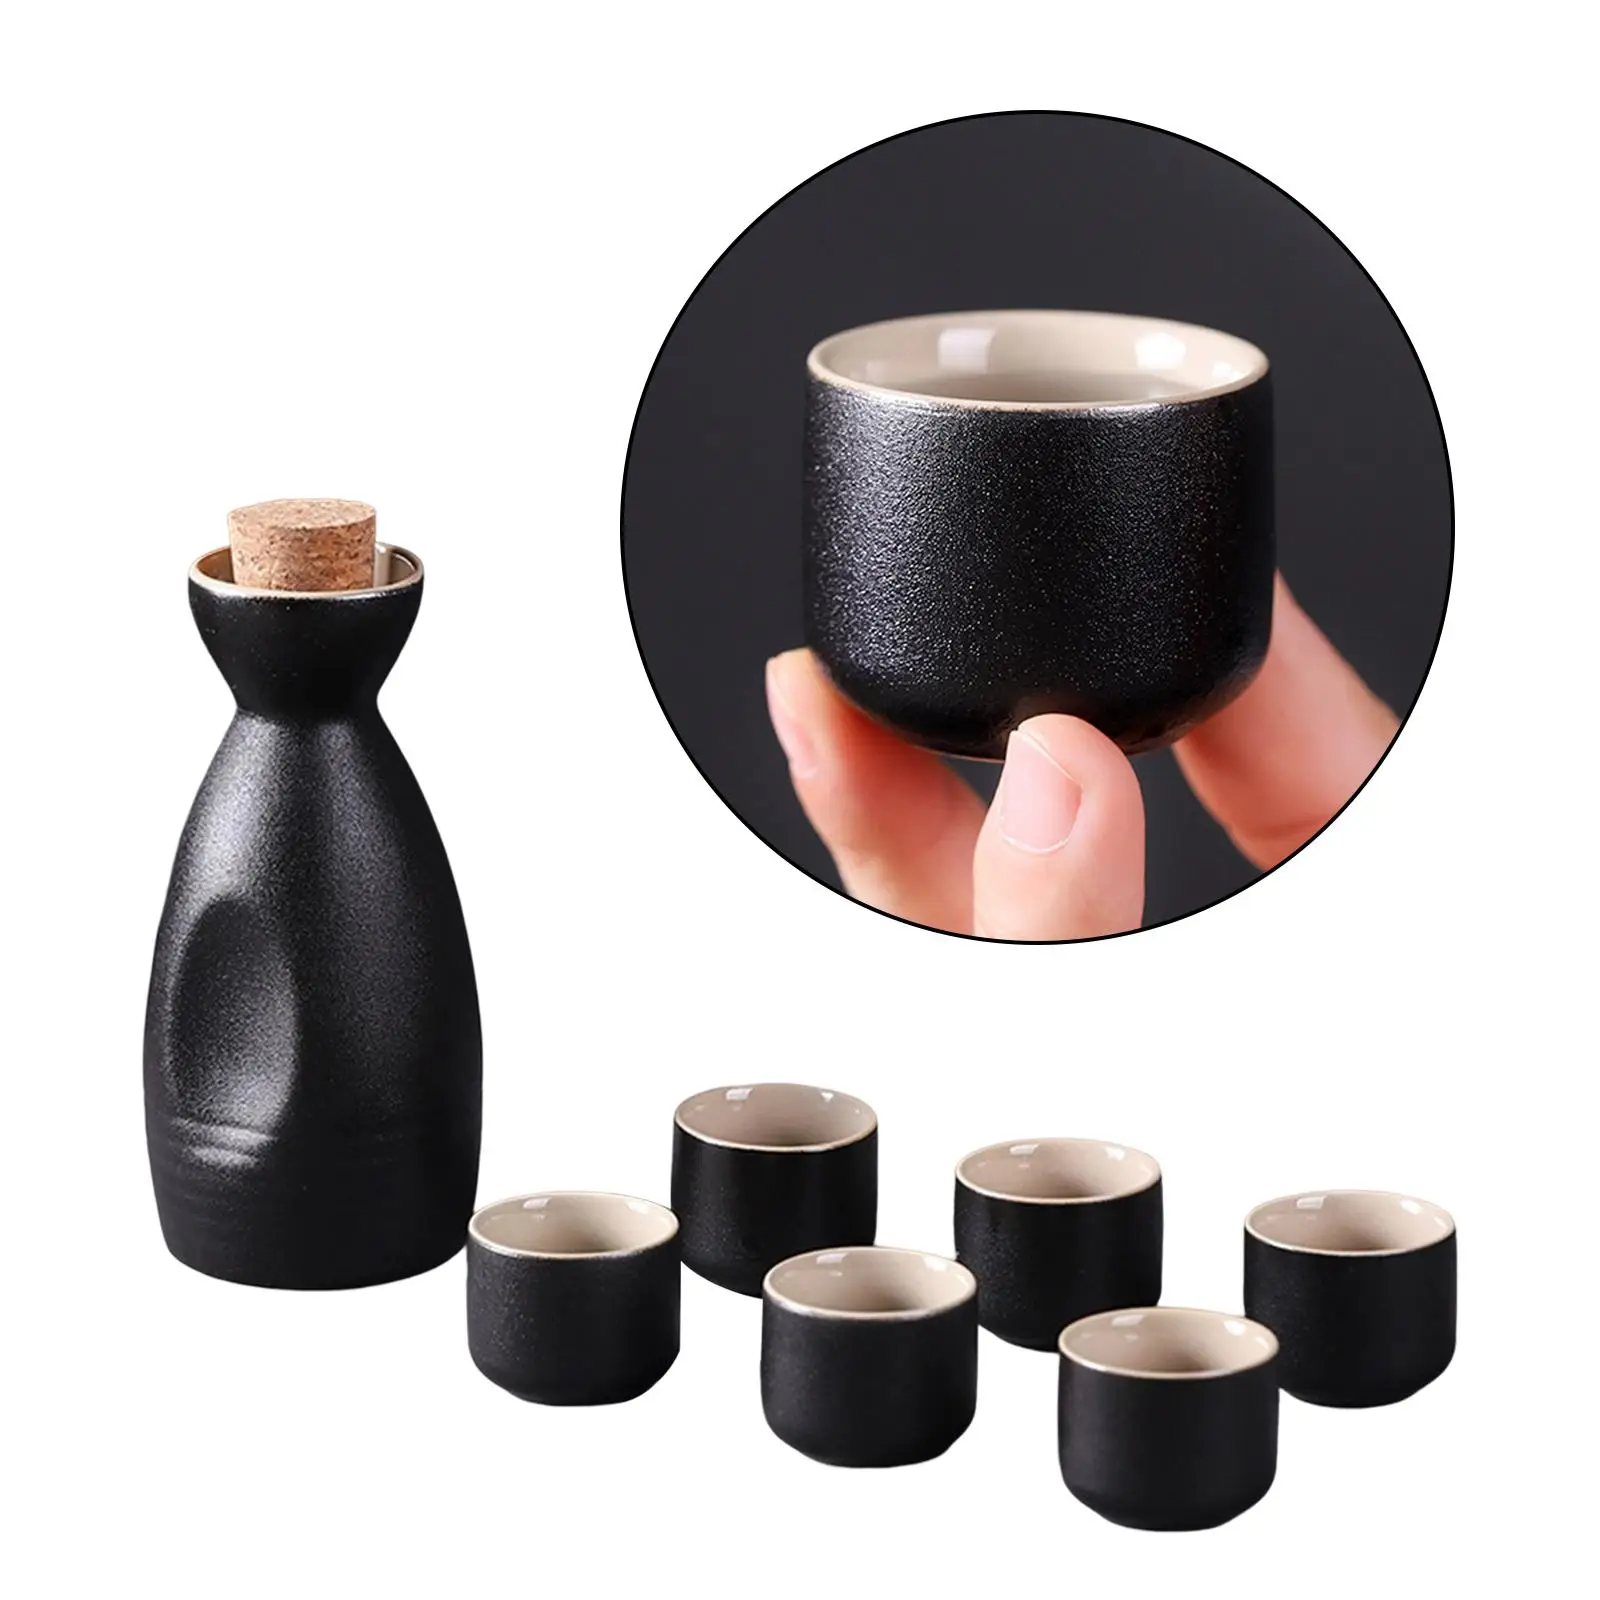 Ceramic Sake Pot Cups Set Groove Design Crafts for Cupboard Home Office